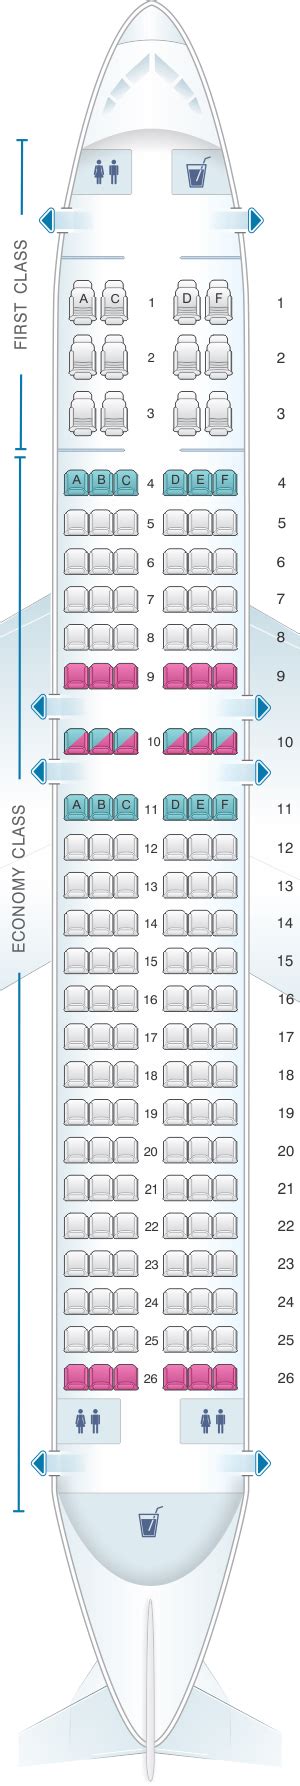 A320 Aircraft Seating Chart Sexiz Pix